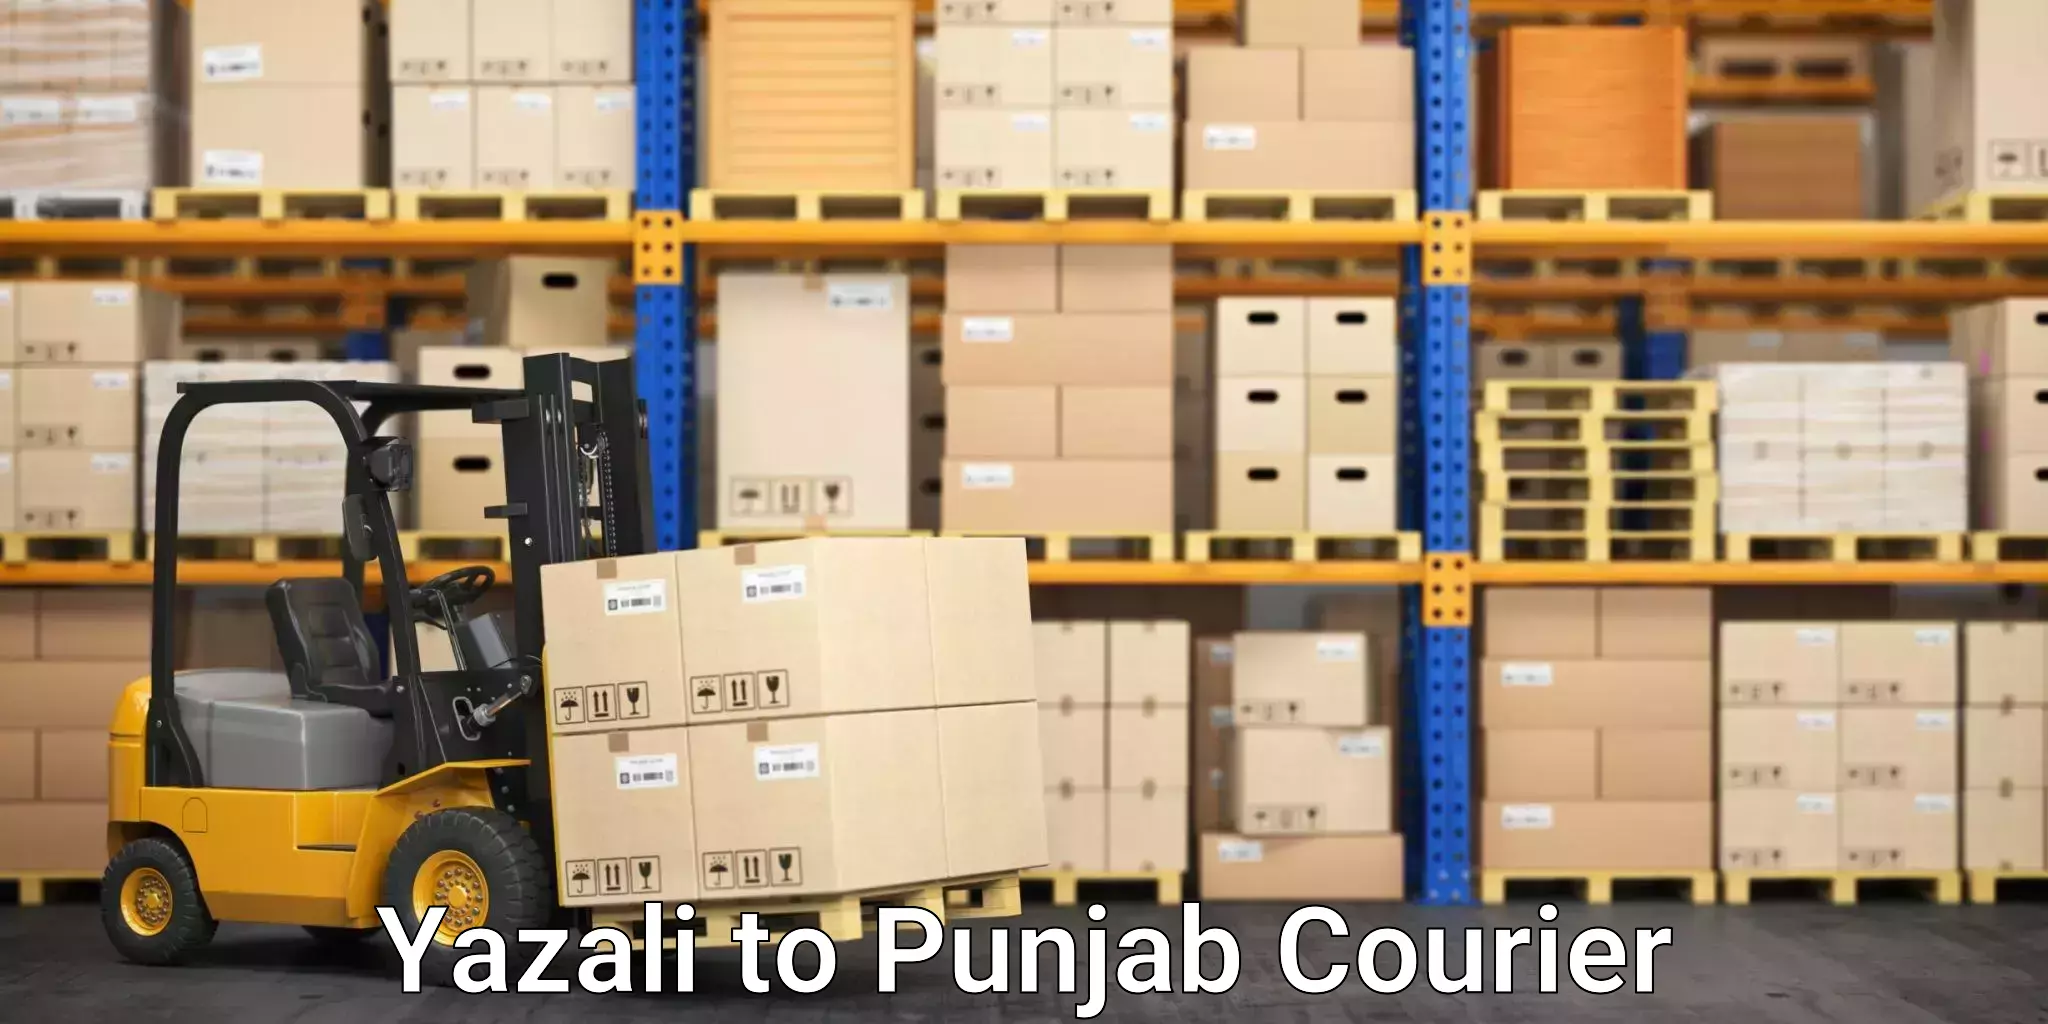 Next-day freight services Yazali to Central University of Punjab Bathinda